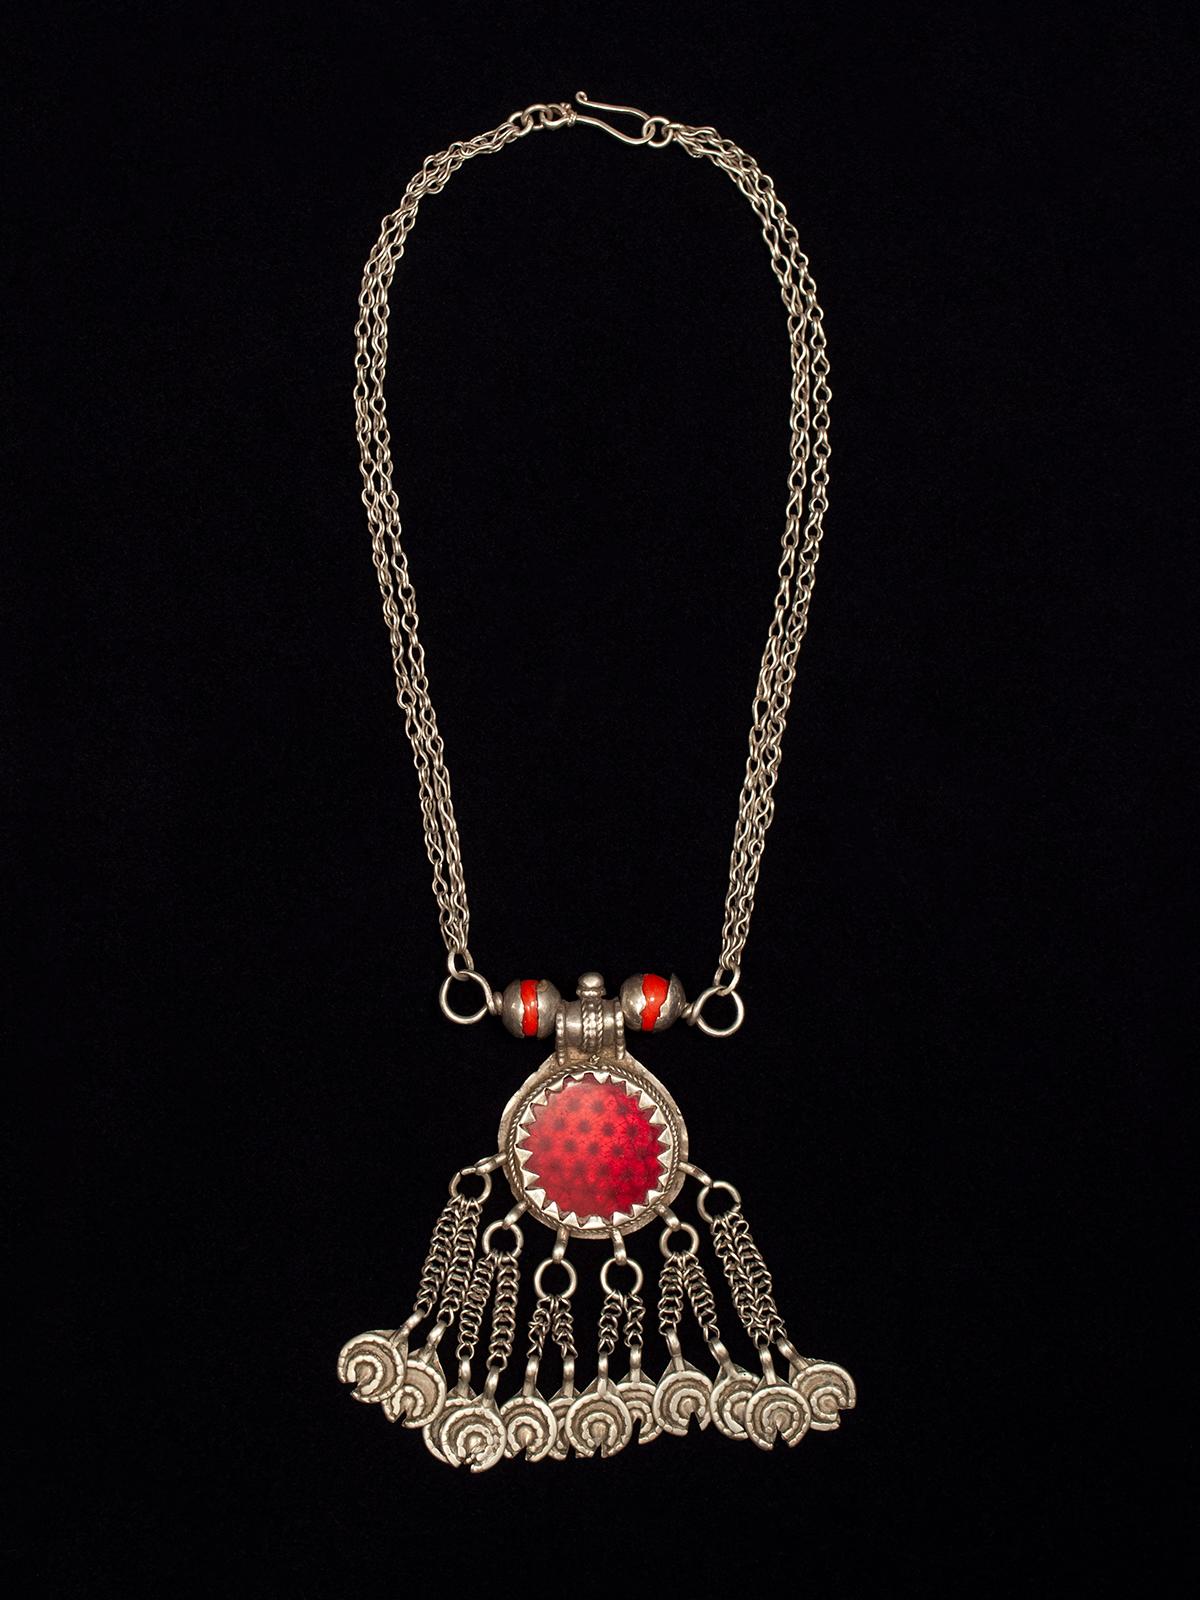 Collier en argent à pendentifs du début au milieu du 20e siècle, Yémen

Ce collier-pendentif présente un intéressant médaillon central en verre rouge transparent sur une feuille d'argent facettée, ce qui lui donne un aspect de réflecteur. Les deux